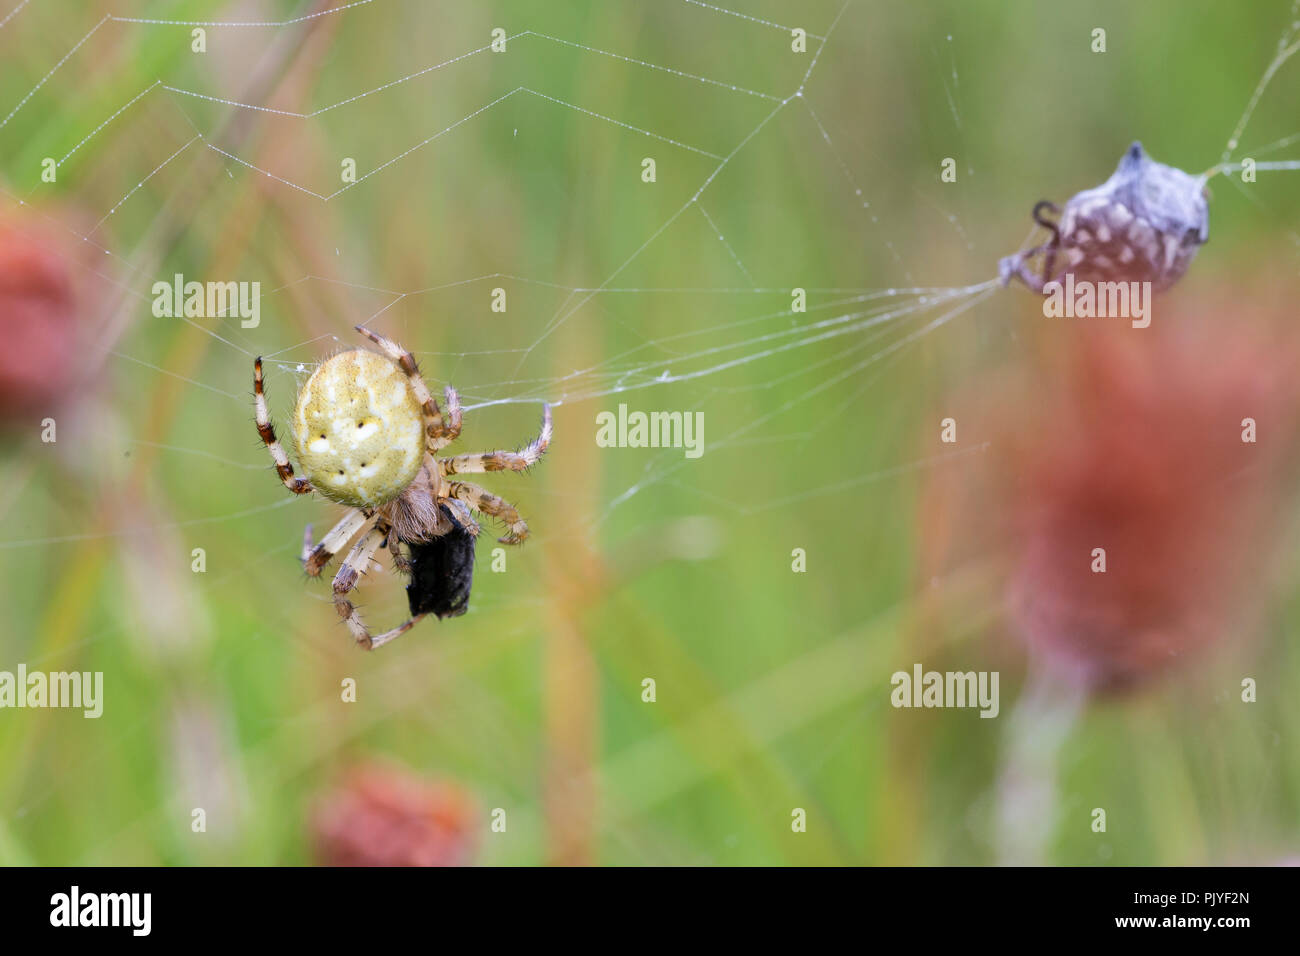 4 spots Orb Web Spider, Araneus quadratus, avec les proies. Whitelye, Monmouthshire, commune du Pays de Galles. Araneidae famille. Banque D'Images